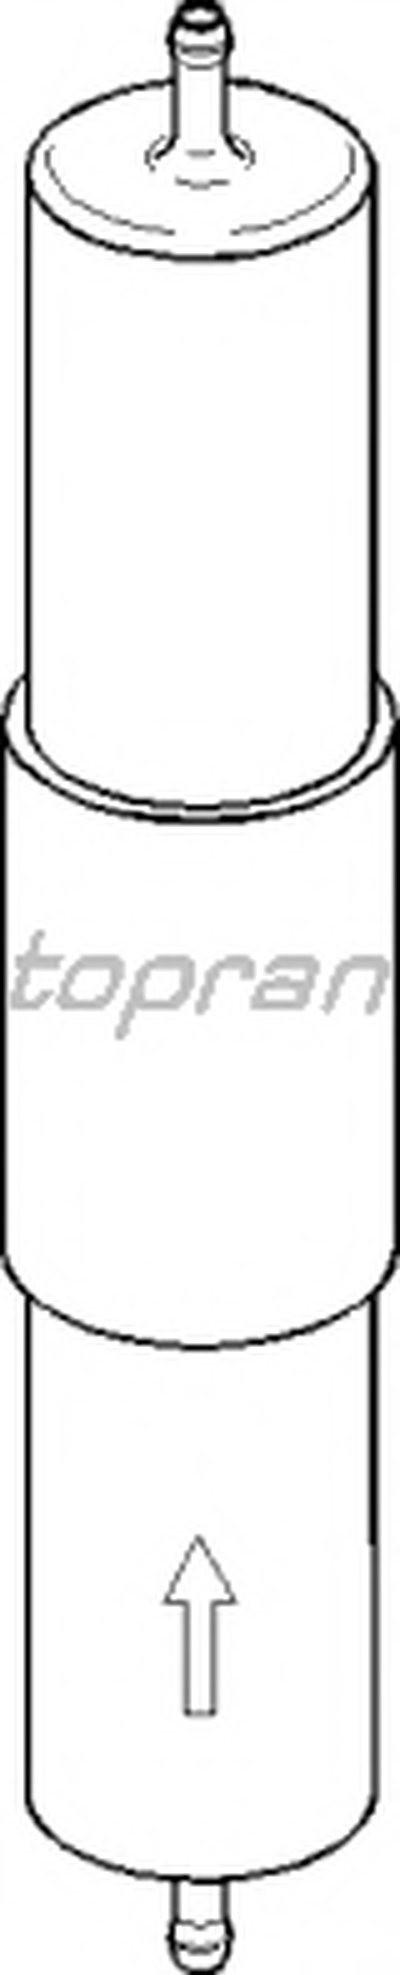 Топливный фильтр TOPRAN купить